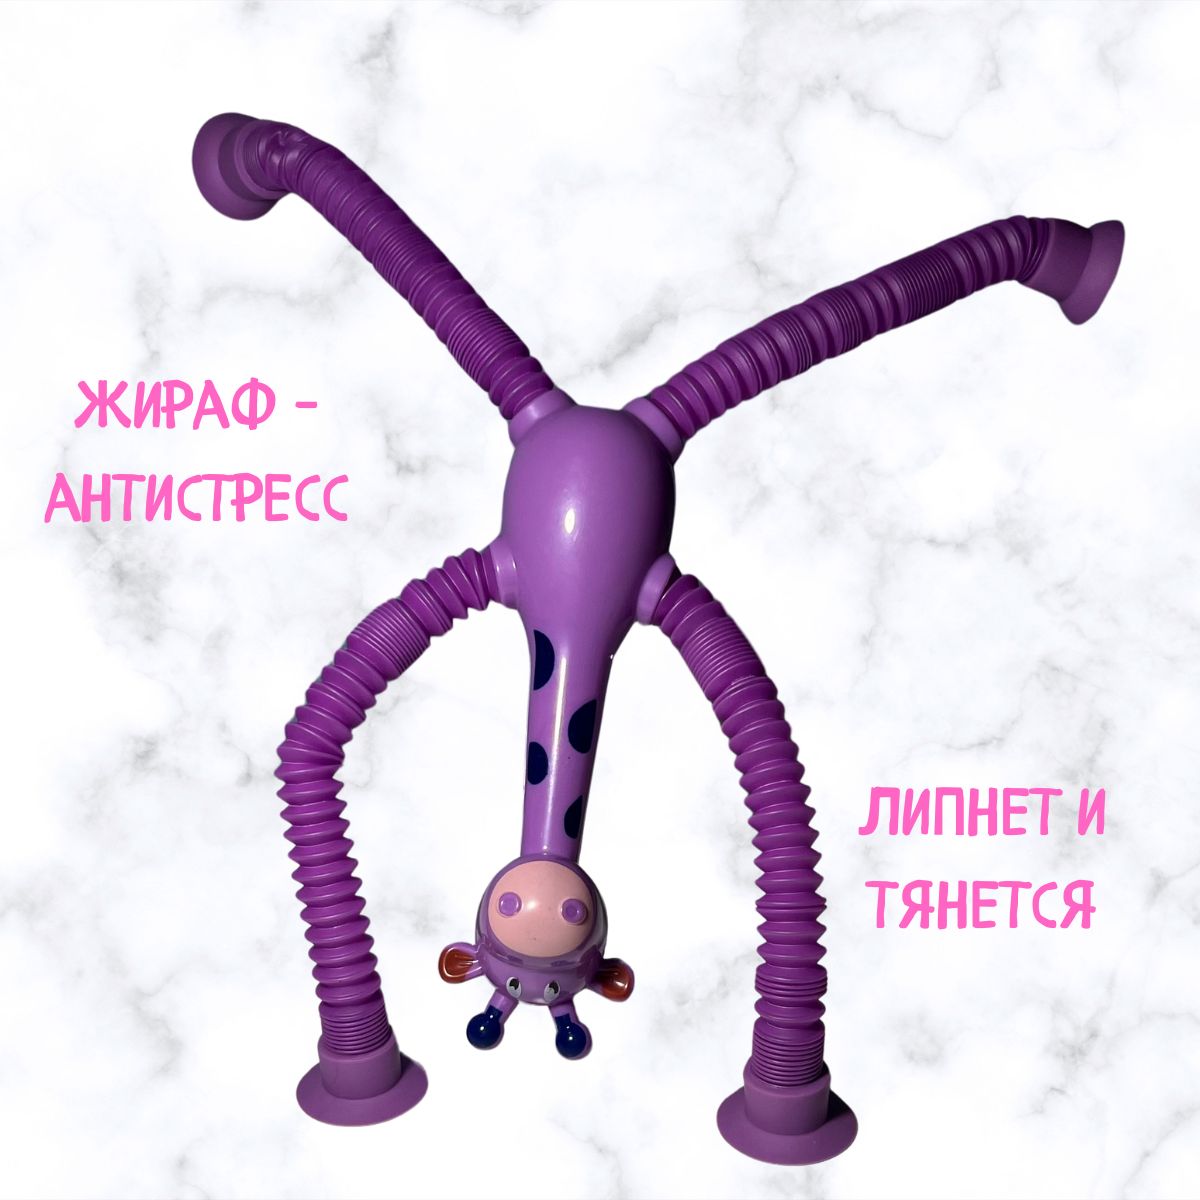 Игрушка-антистресс Жираф фиолетовый подголовник антистресс на застежке фиолетовый